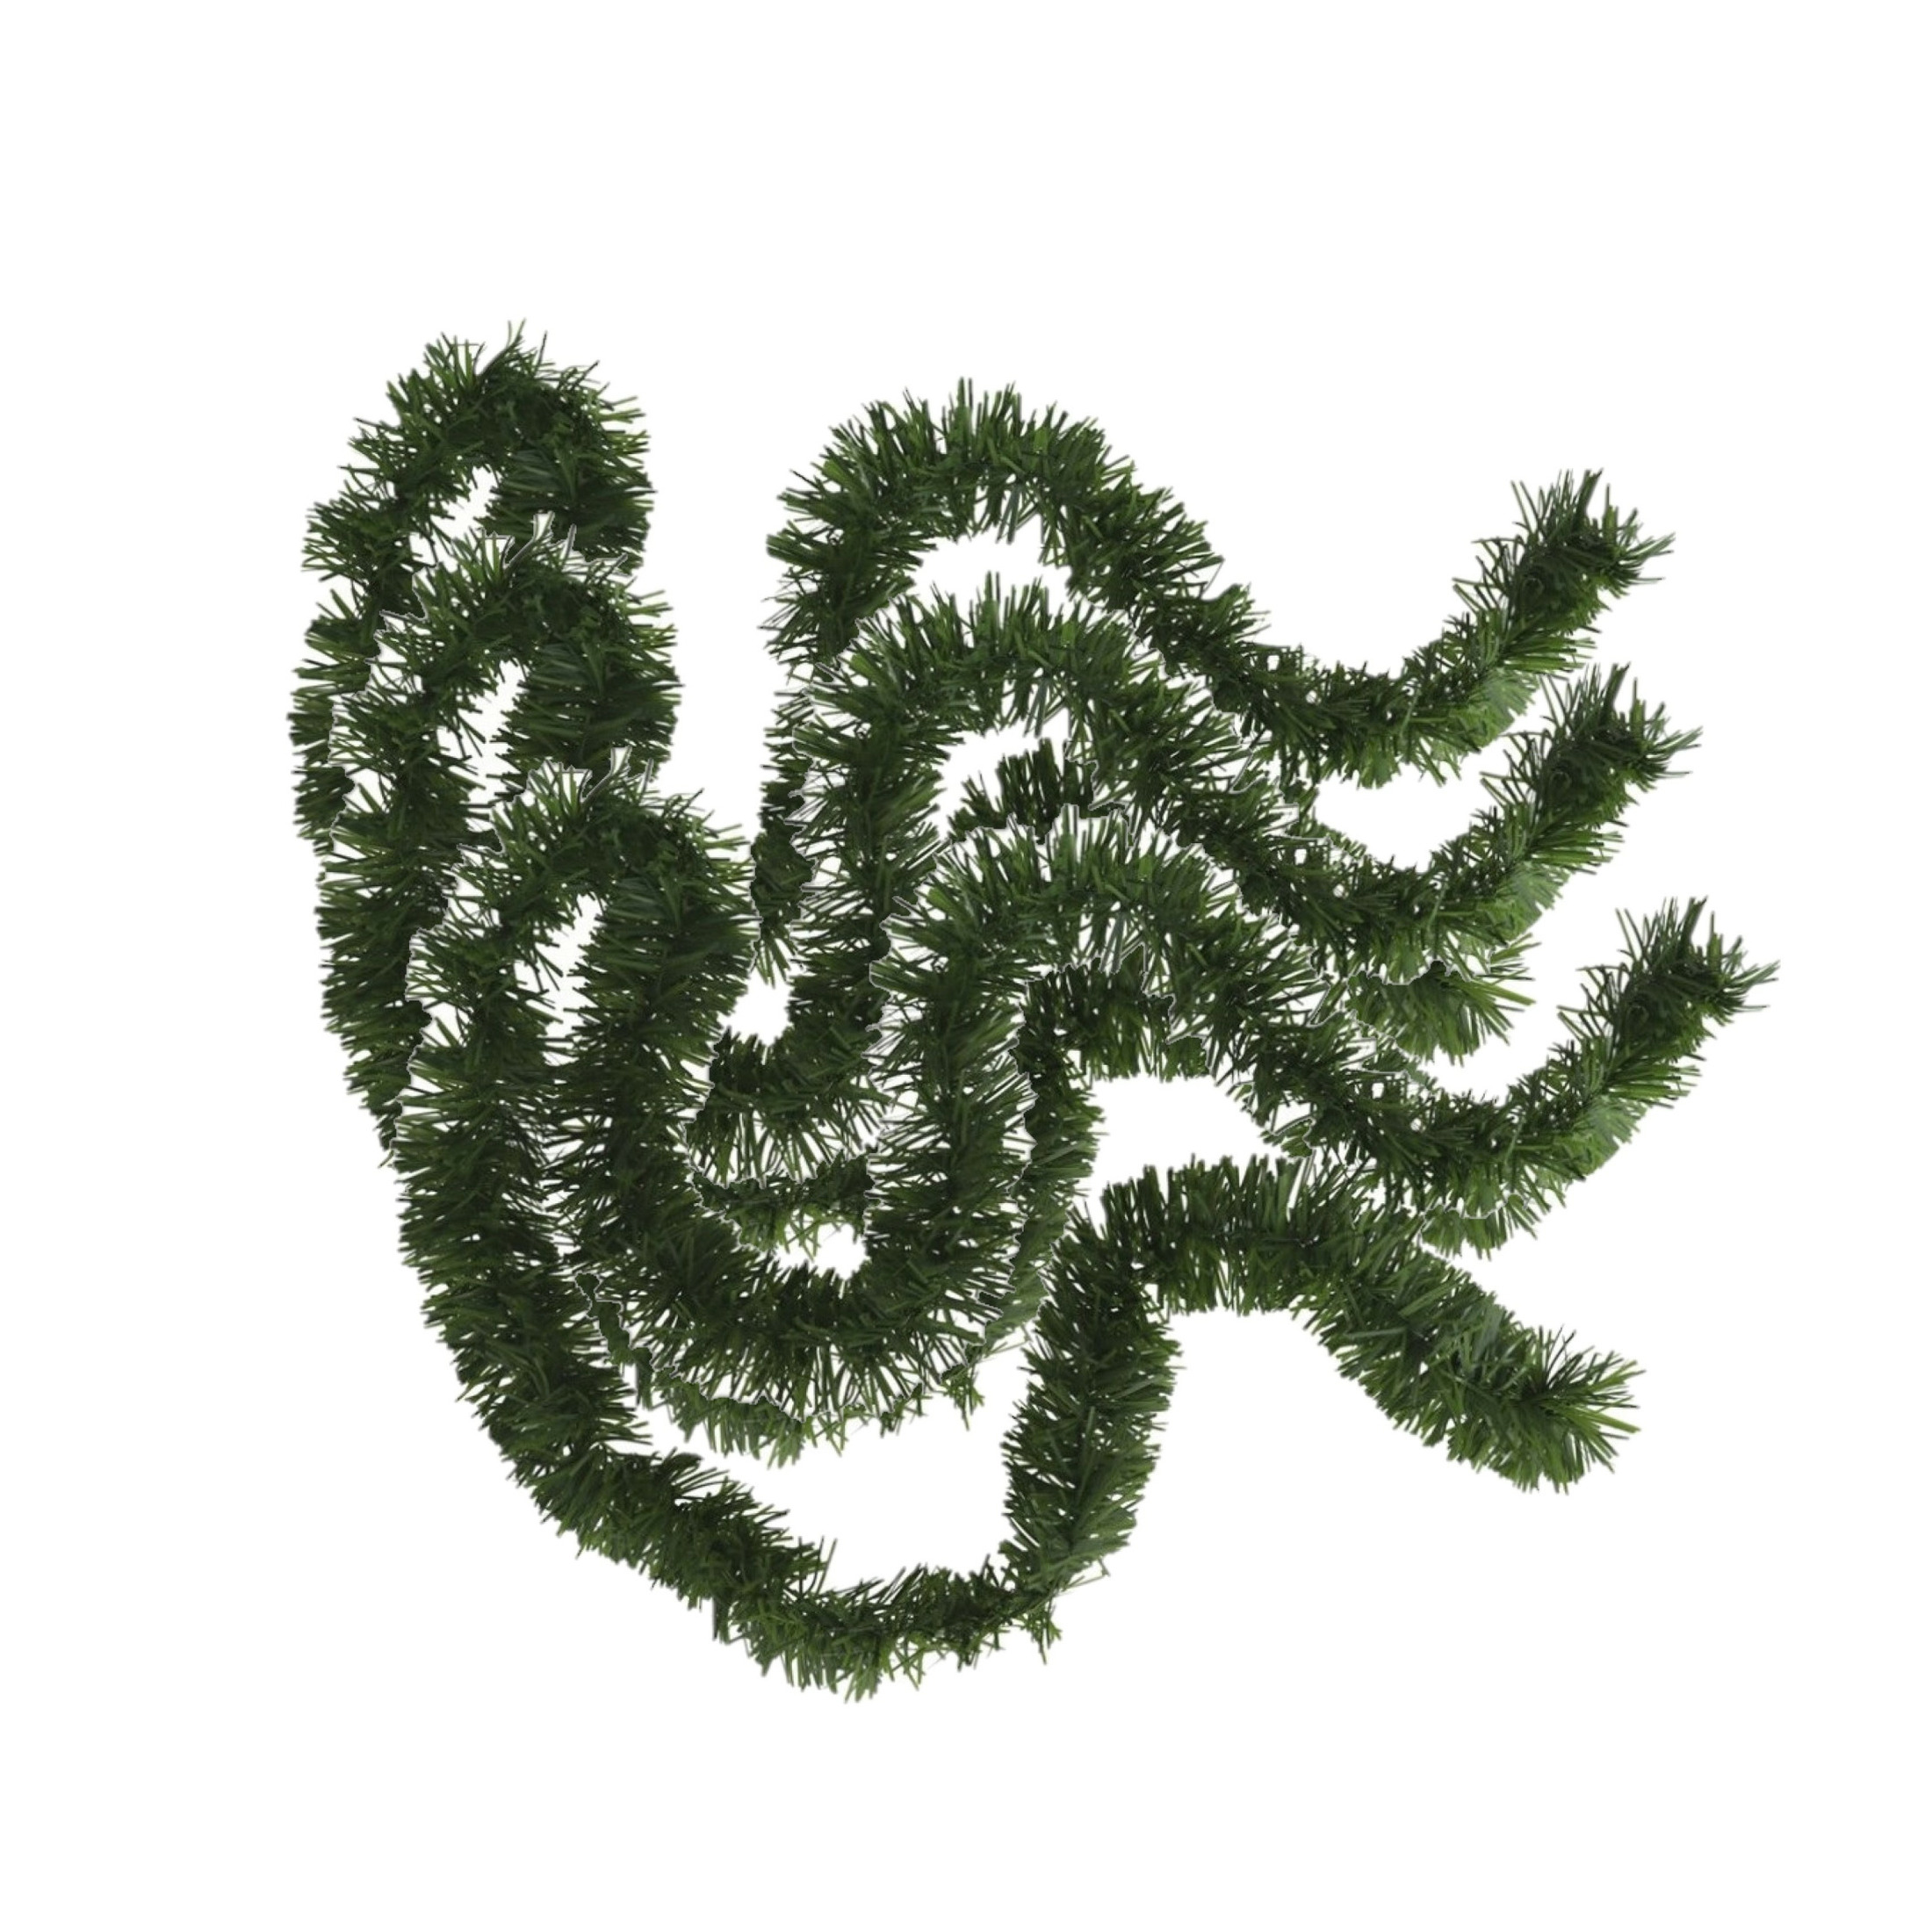 3x stuks kerstboom folie slingers-lametta guirlandes van 180 x 7 cm in de kleur glitter groen